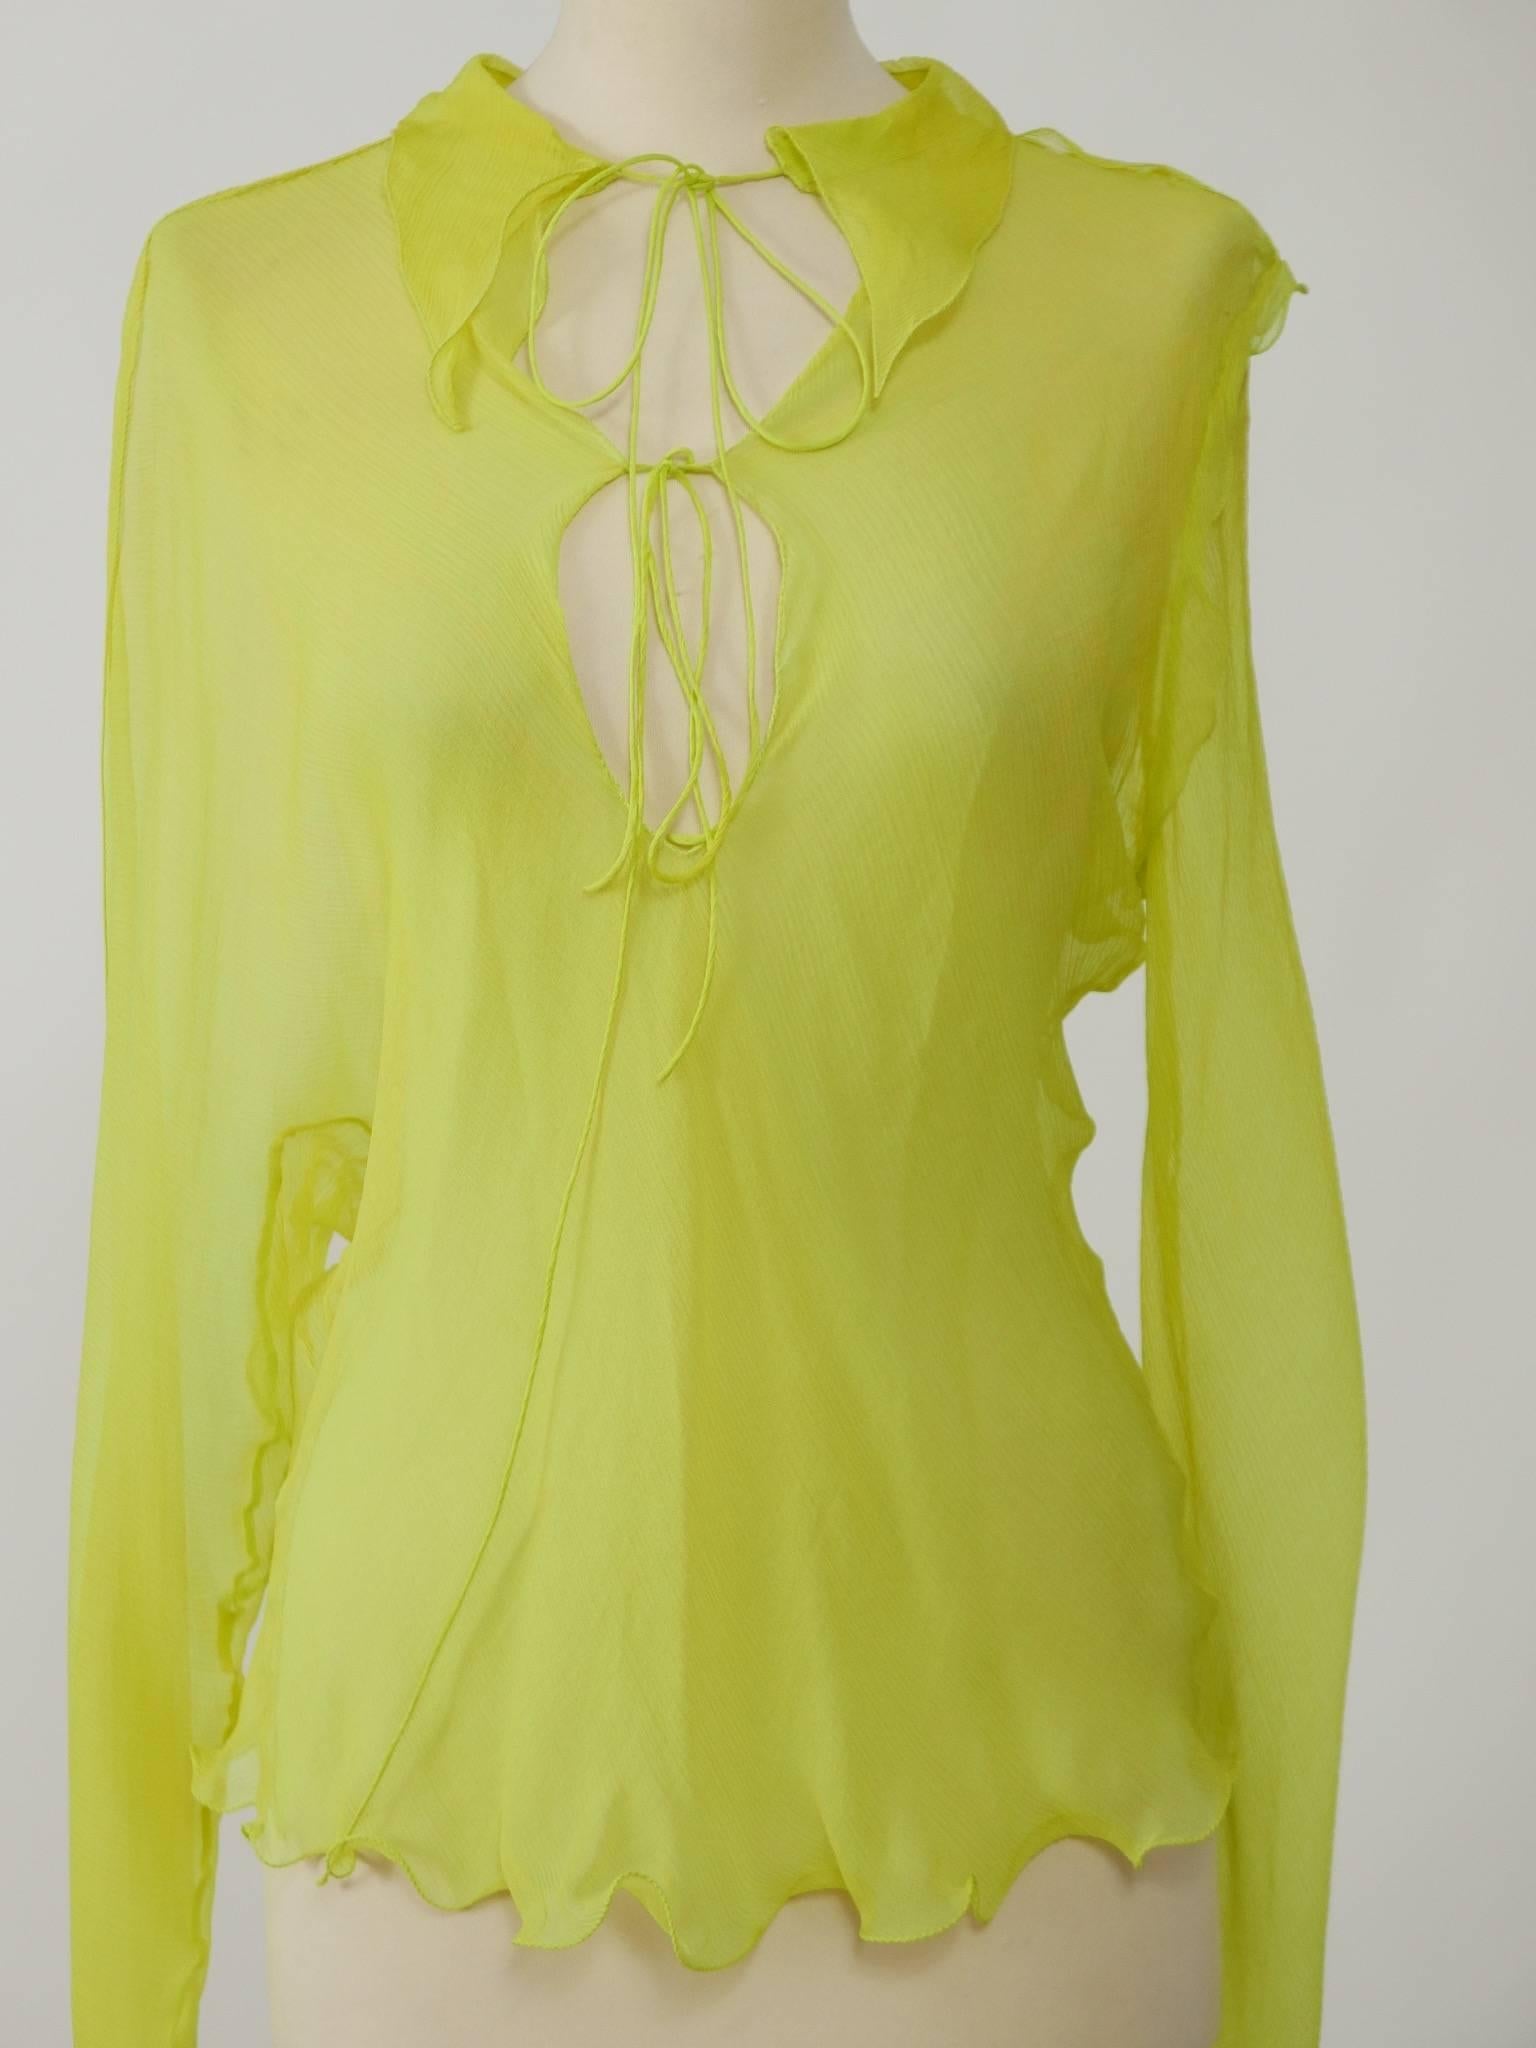 Fendi Yellow Lime Organdy Blouse Shirt 1